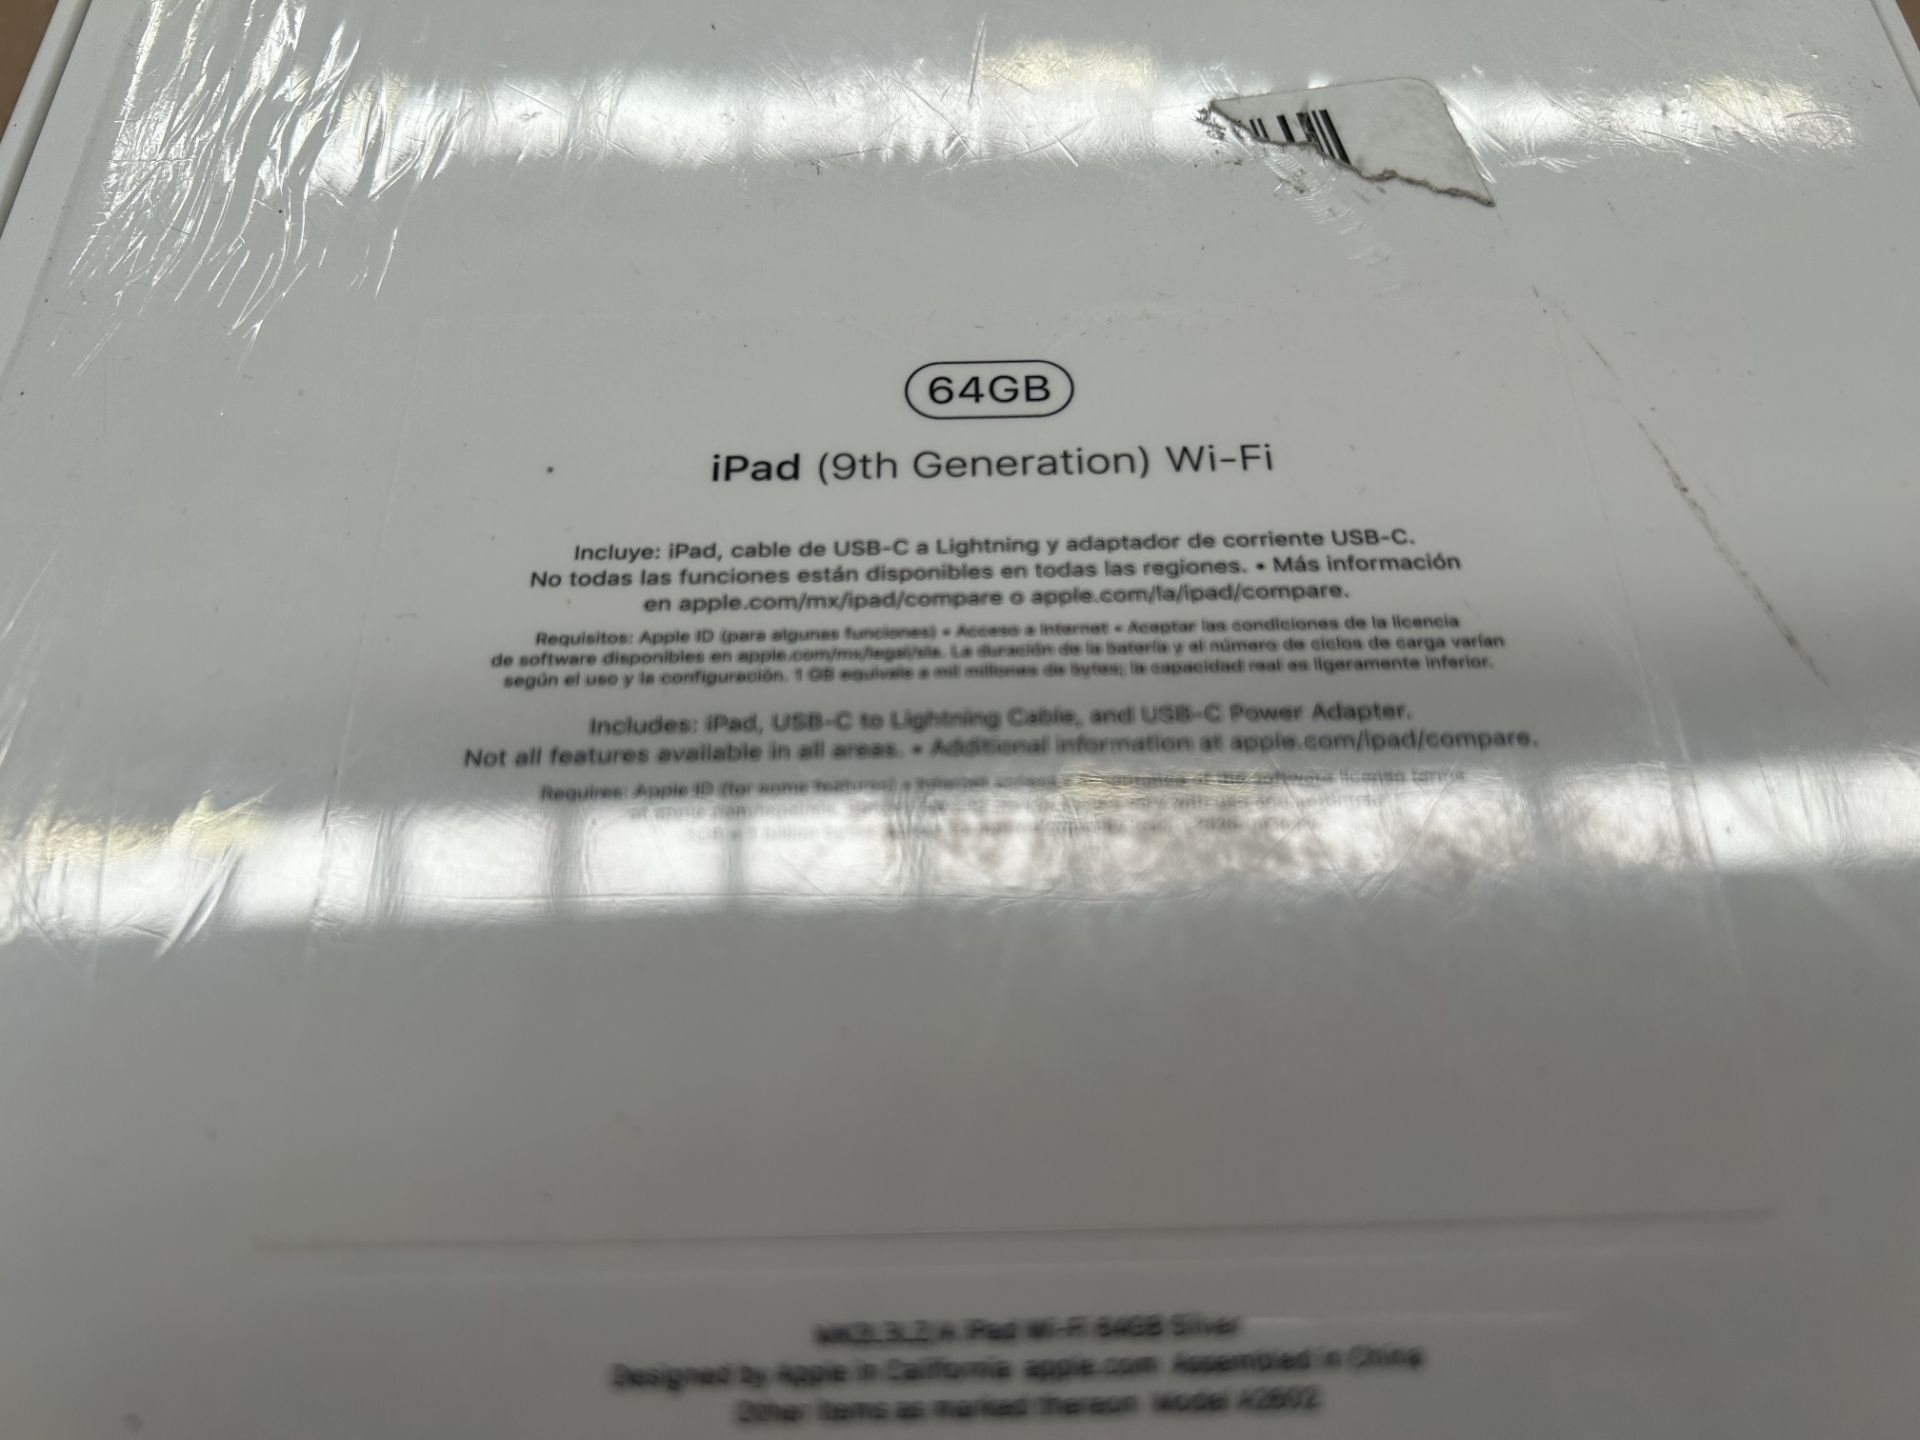 (Nuevo) Lote de 1 iPad 9a generación, de 64 GB, Serie XLFQR, Color PLATEADO (Sellada, favor de insp - Image 3 of 4